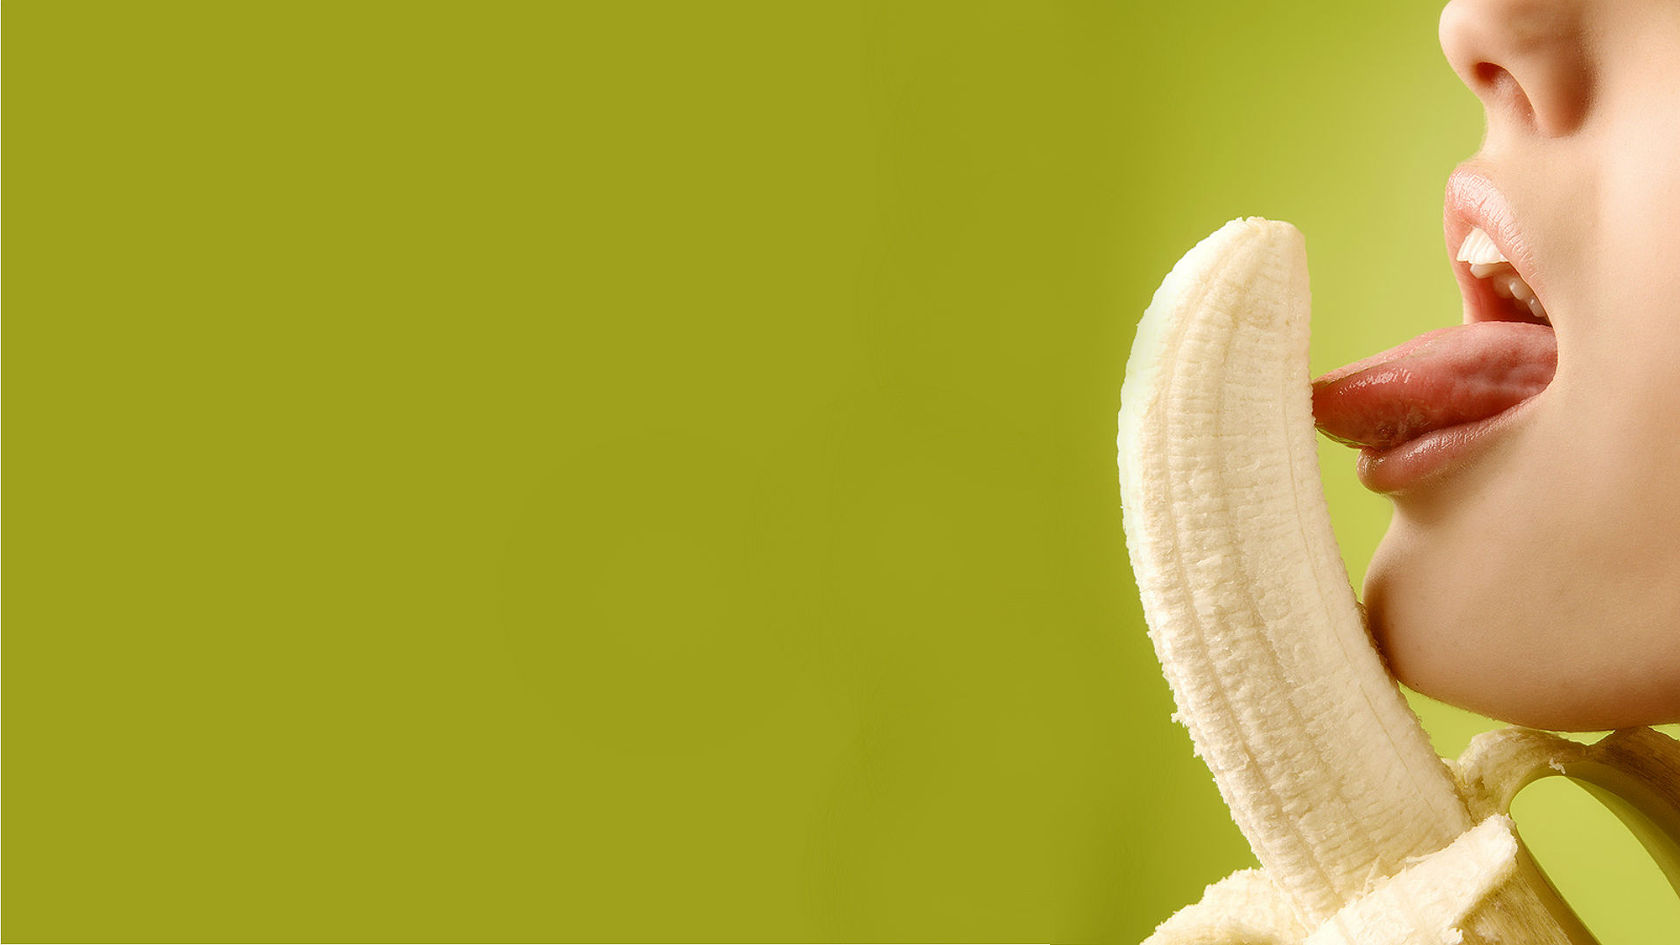 Красавица на кухне игриво посасывает бананы в сгущенке